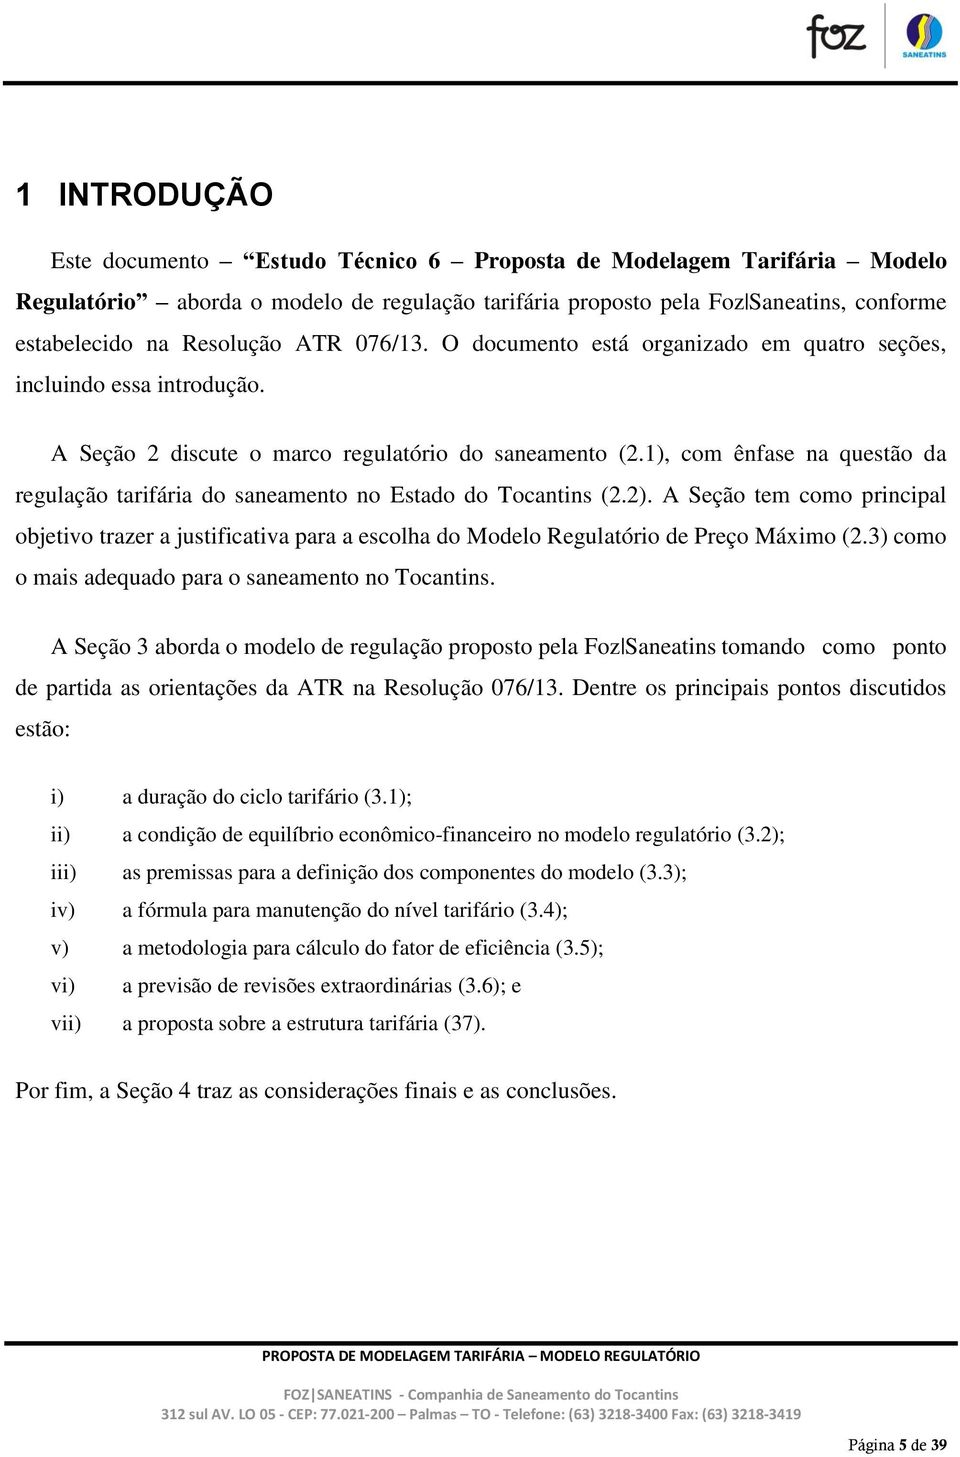 1), com ênfase na questão da regulação tarifária do saneamento no Estado do Tocantins (2.2).